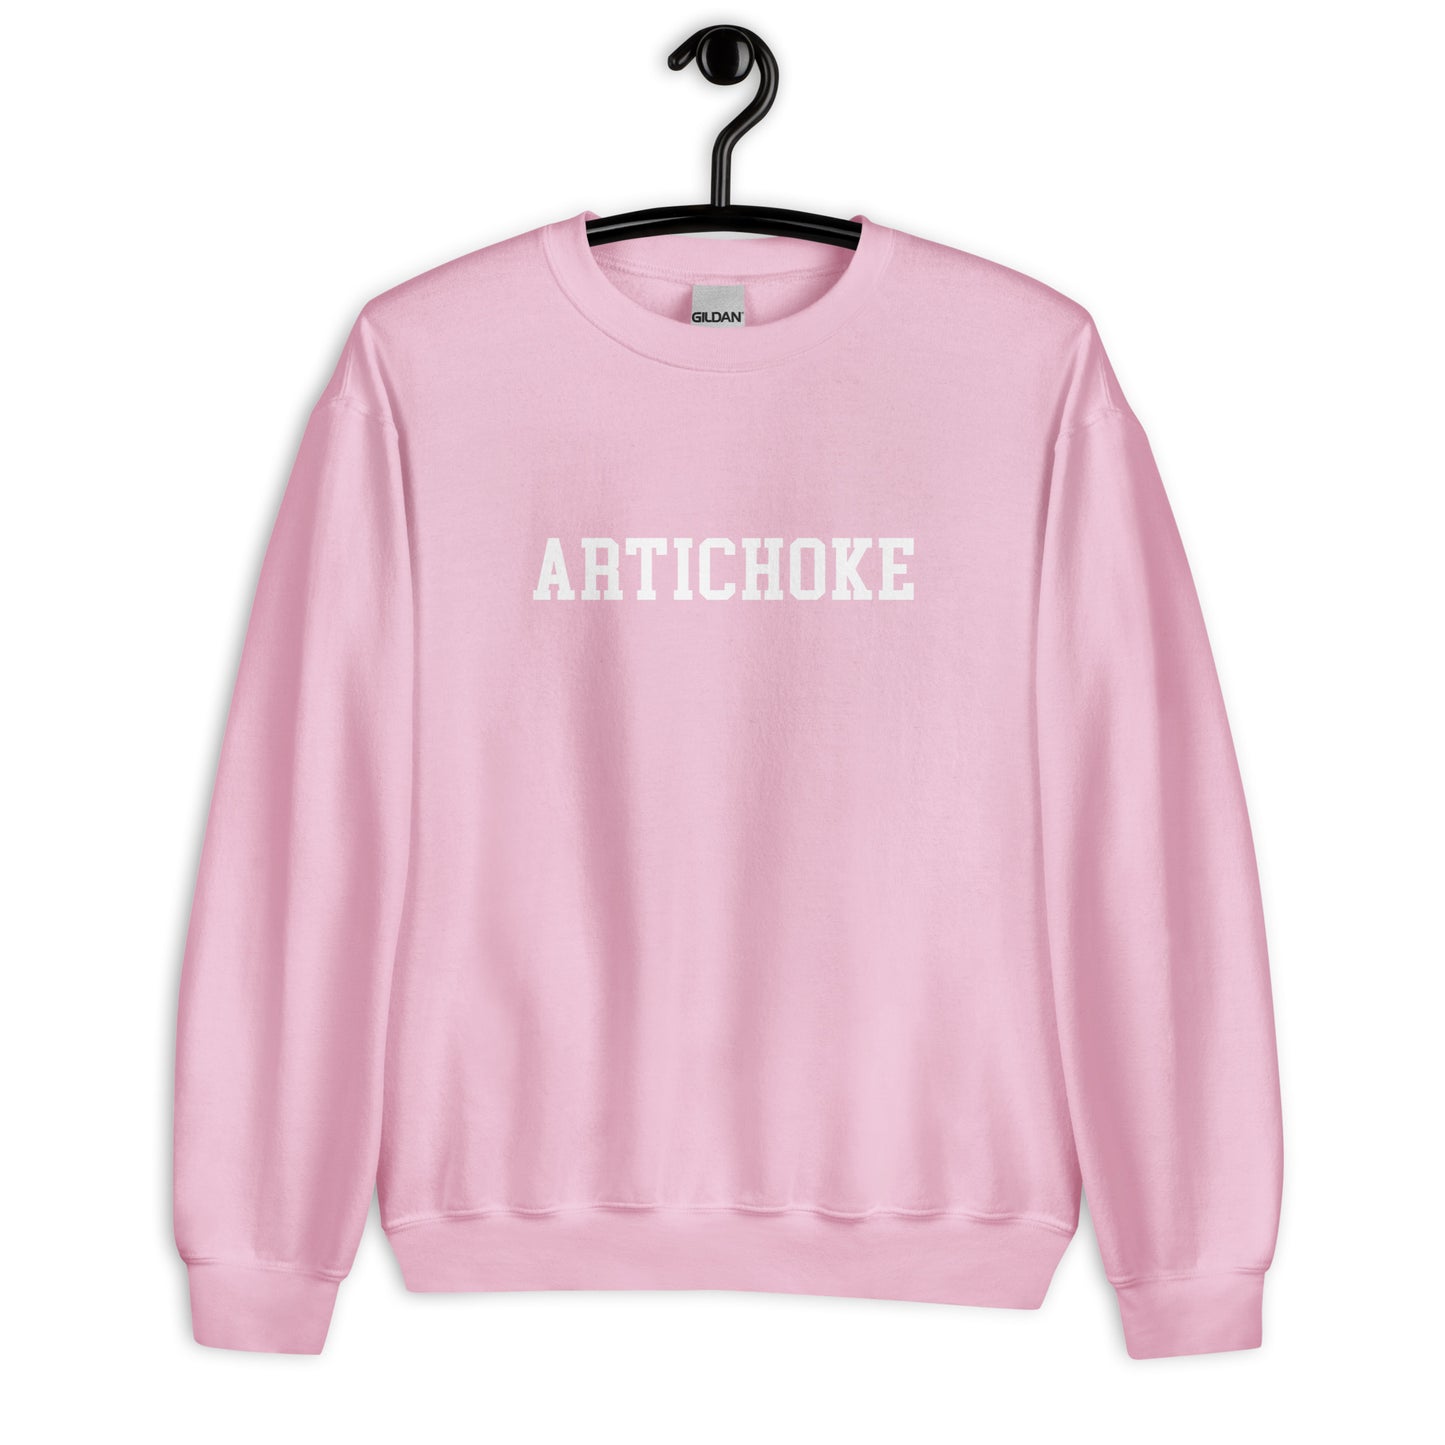 Artichoke Sweatshirt - Straight Font